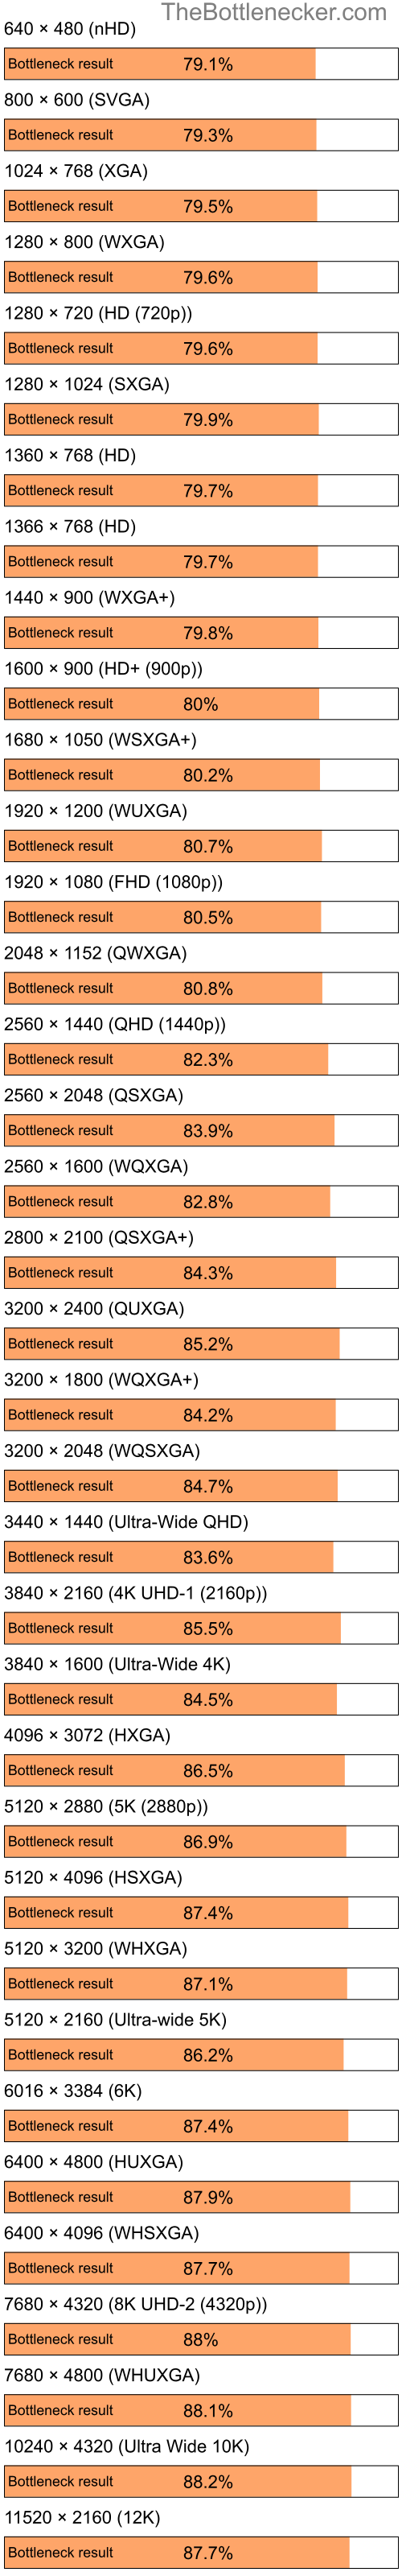 Bottleneck results by resolution for Intel Celeron and NVIDIA nForce 610i in General Tasks